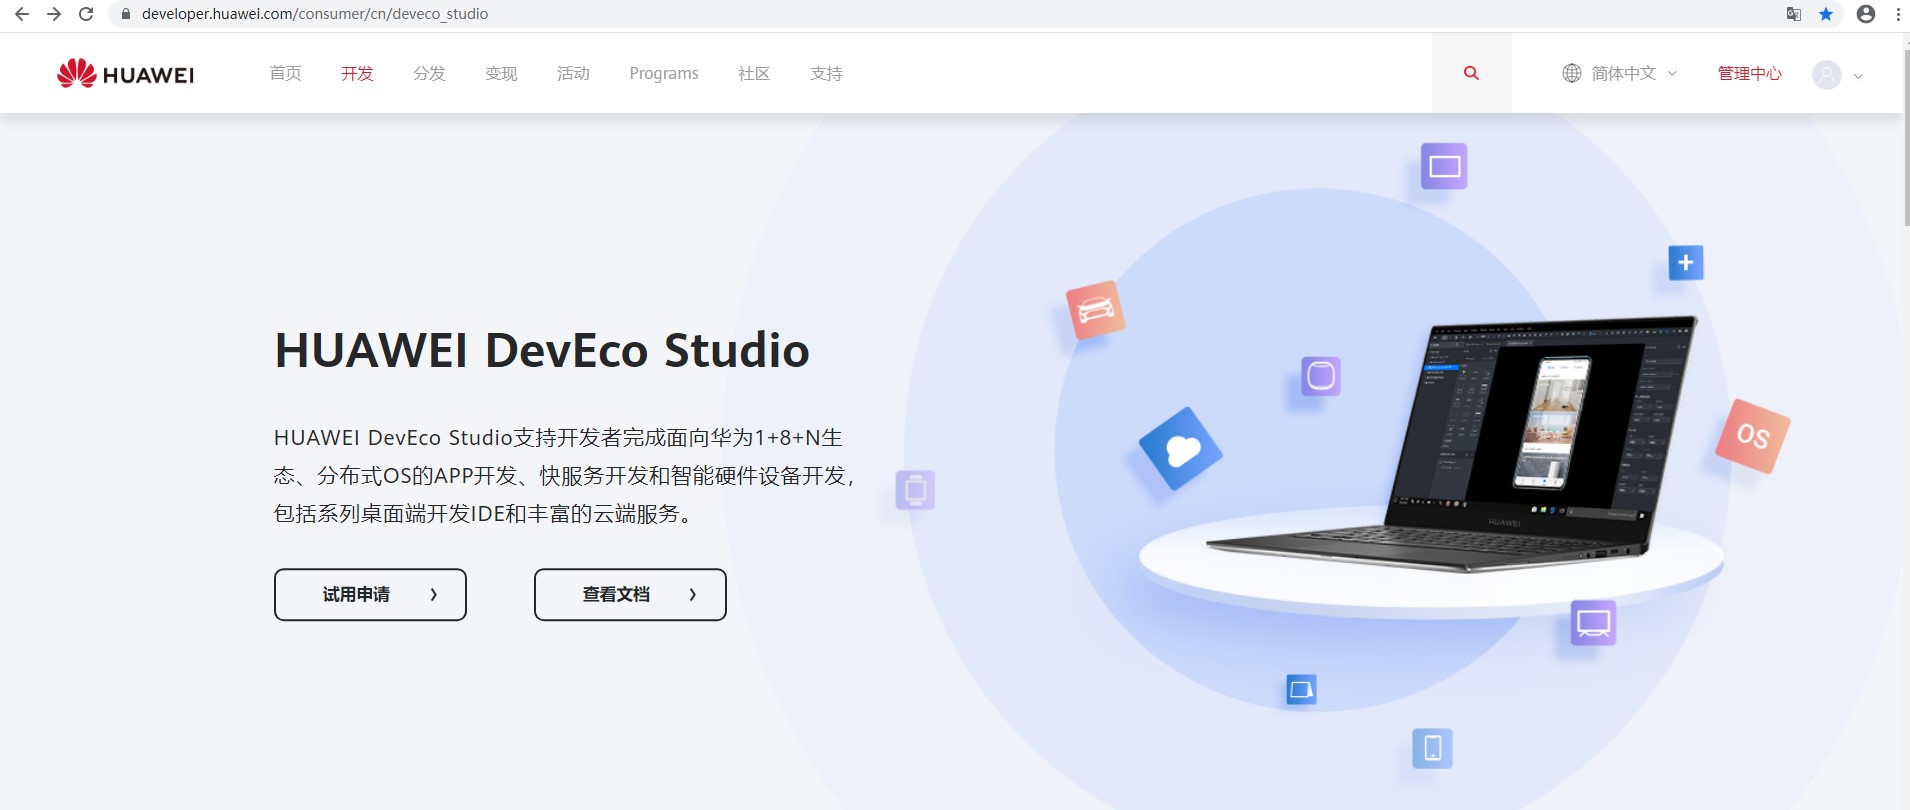 DevEco Studio使用指南上新篇-移动设备管理（MDM）-开源基础软件社区